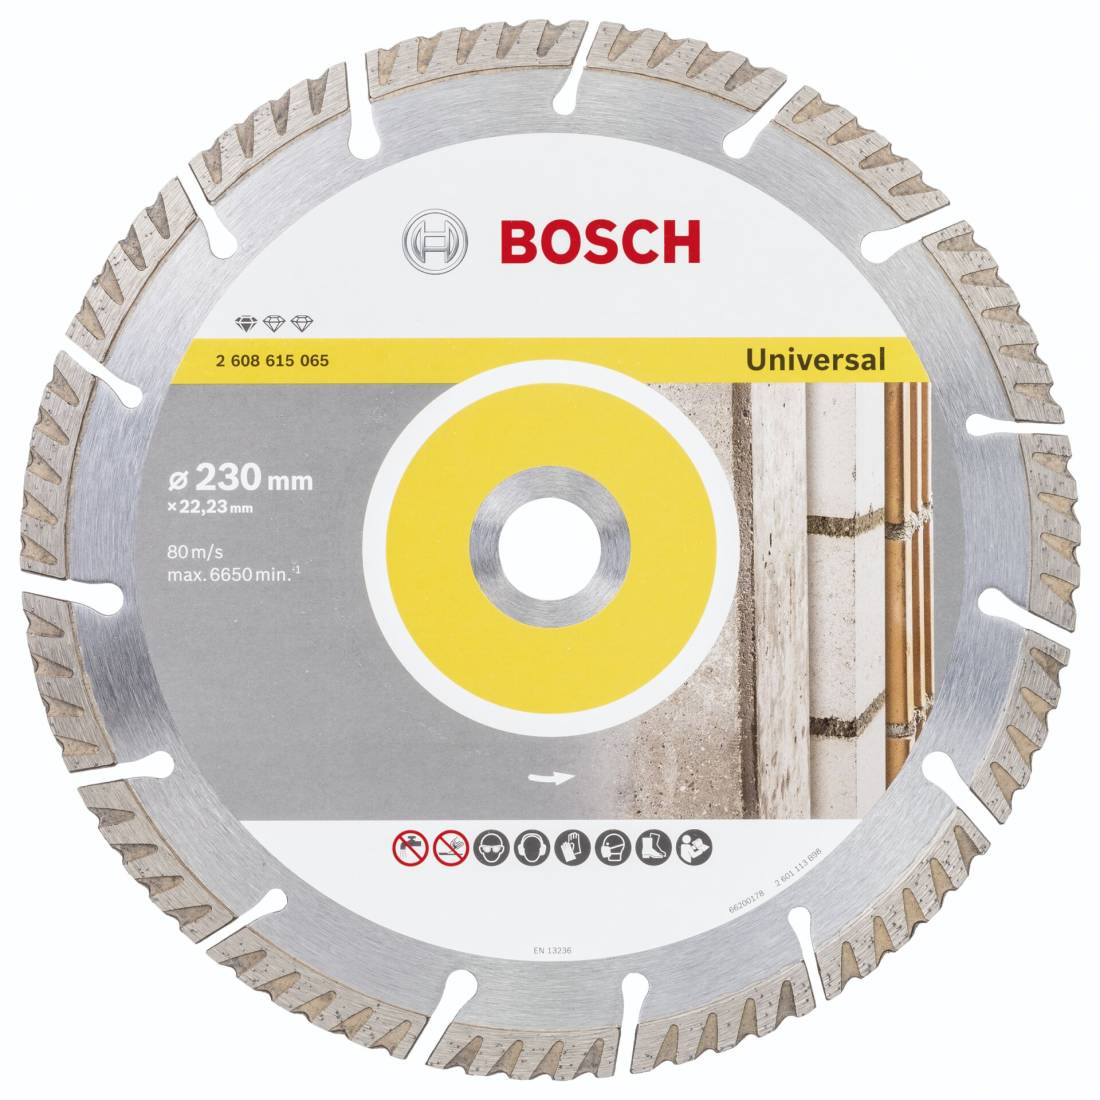 Bosch DIA-TS 230x22,23 Std. per Univ.Speed